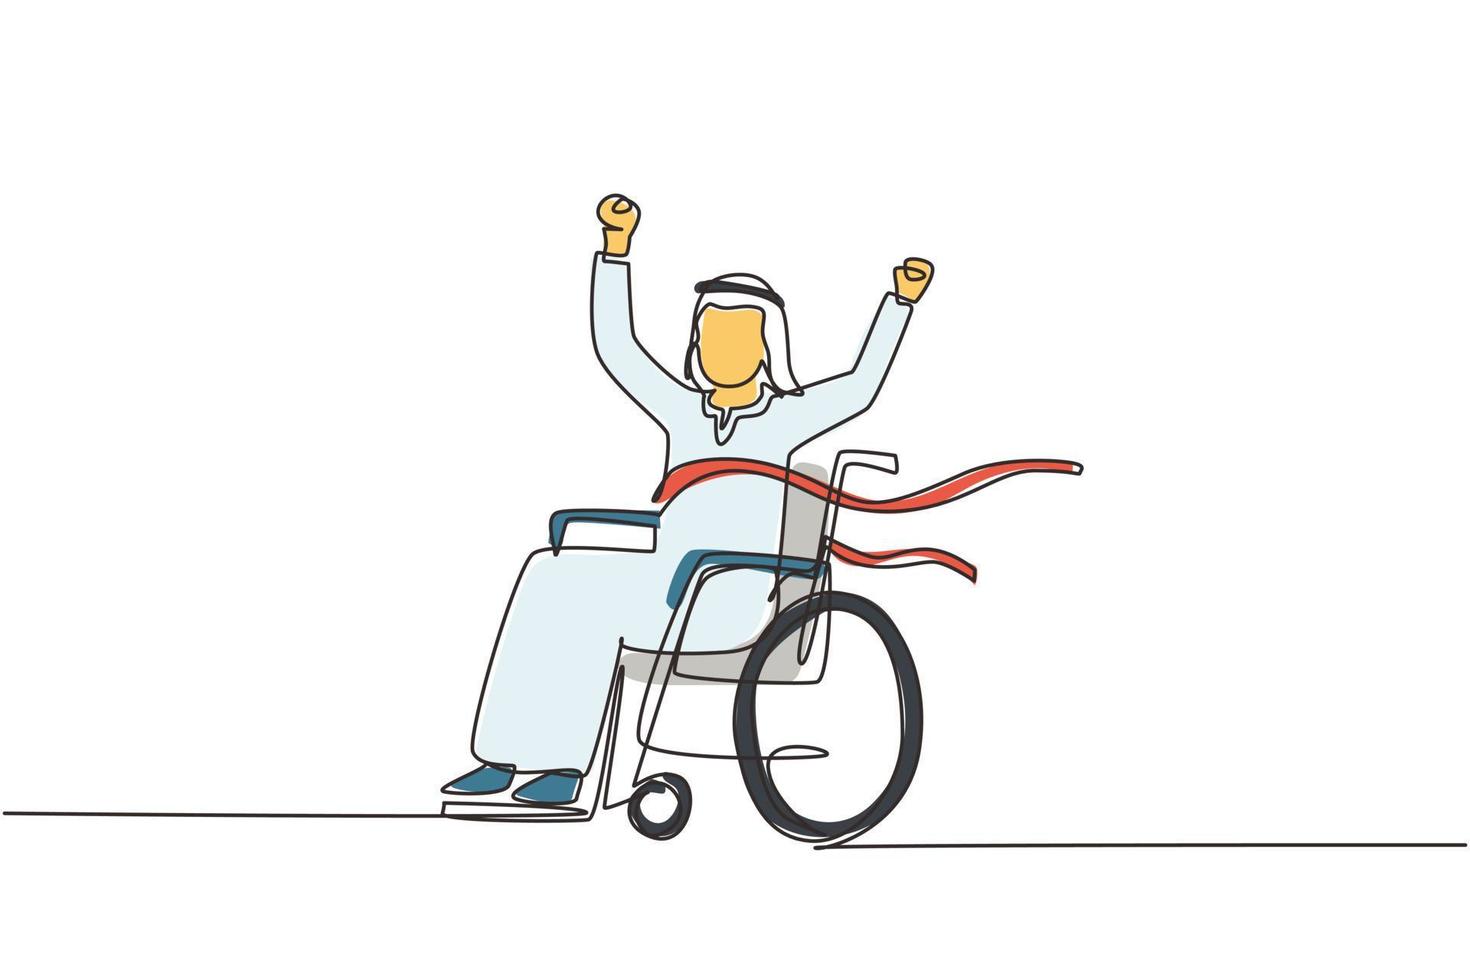 dibujo continuo de una línea hombre árabe joven usuario de silla de ruedas cruzando la línea de meta roja. feliz ganador, exitoso campeón. sociedad, comunidad de personas con discapacidad. ilustración de vector de diseño de dibujo de una sola línea